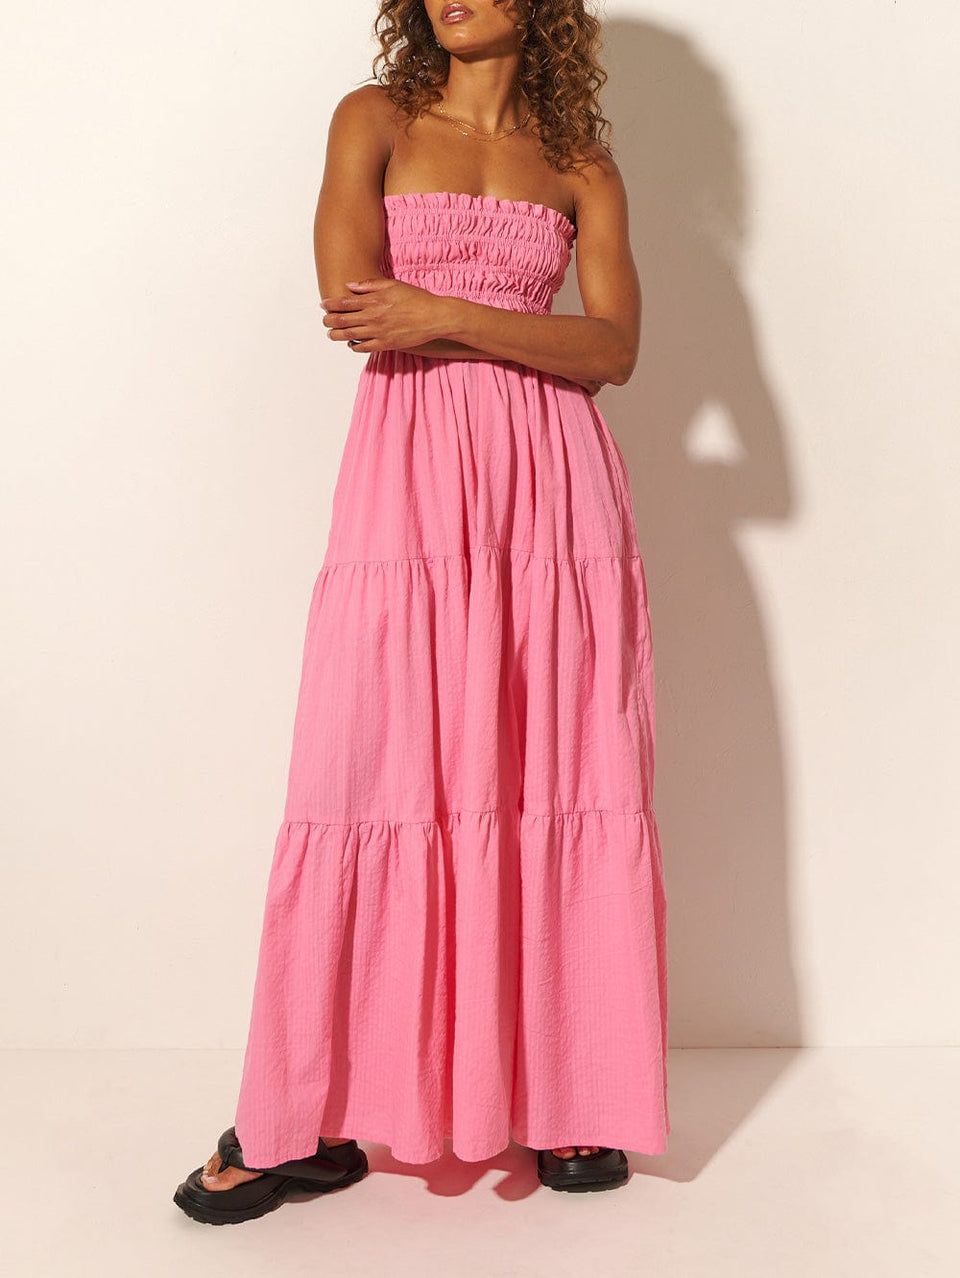 KIVARI Laura Maxi Dress | Model wears Pink Maxi Dress